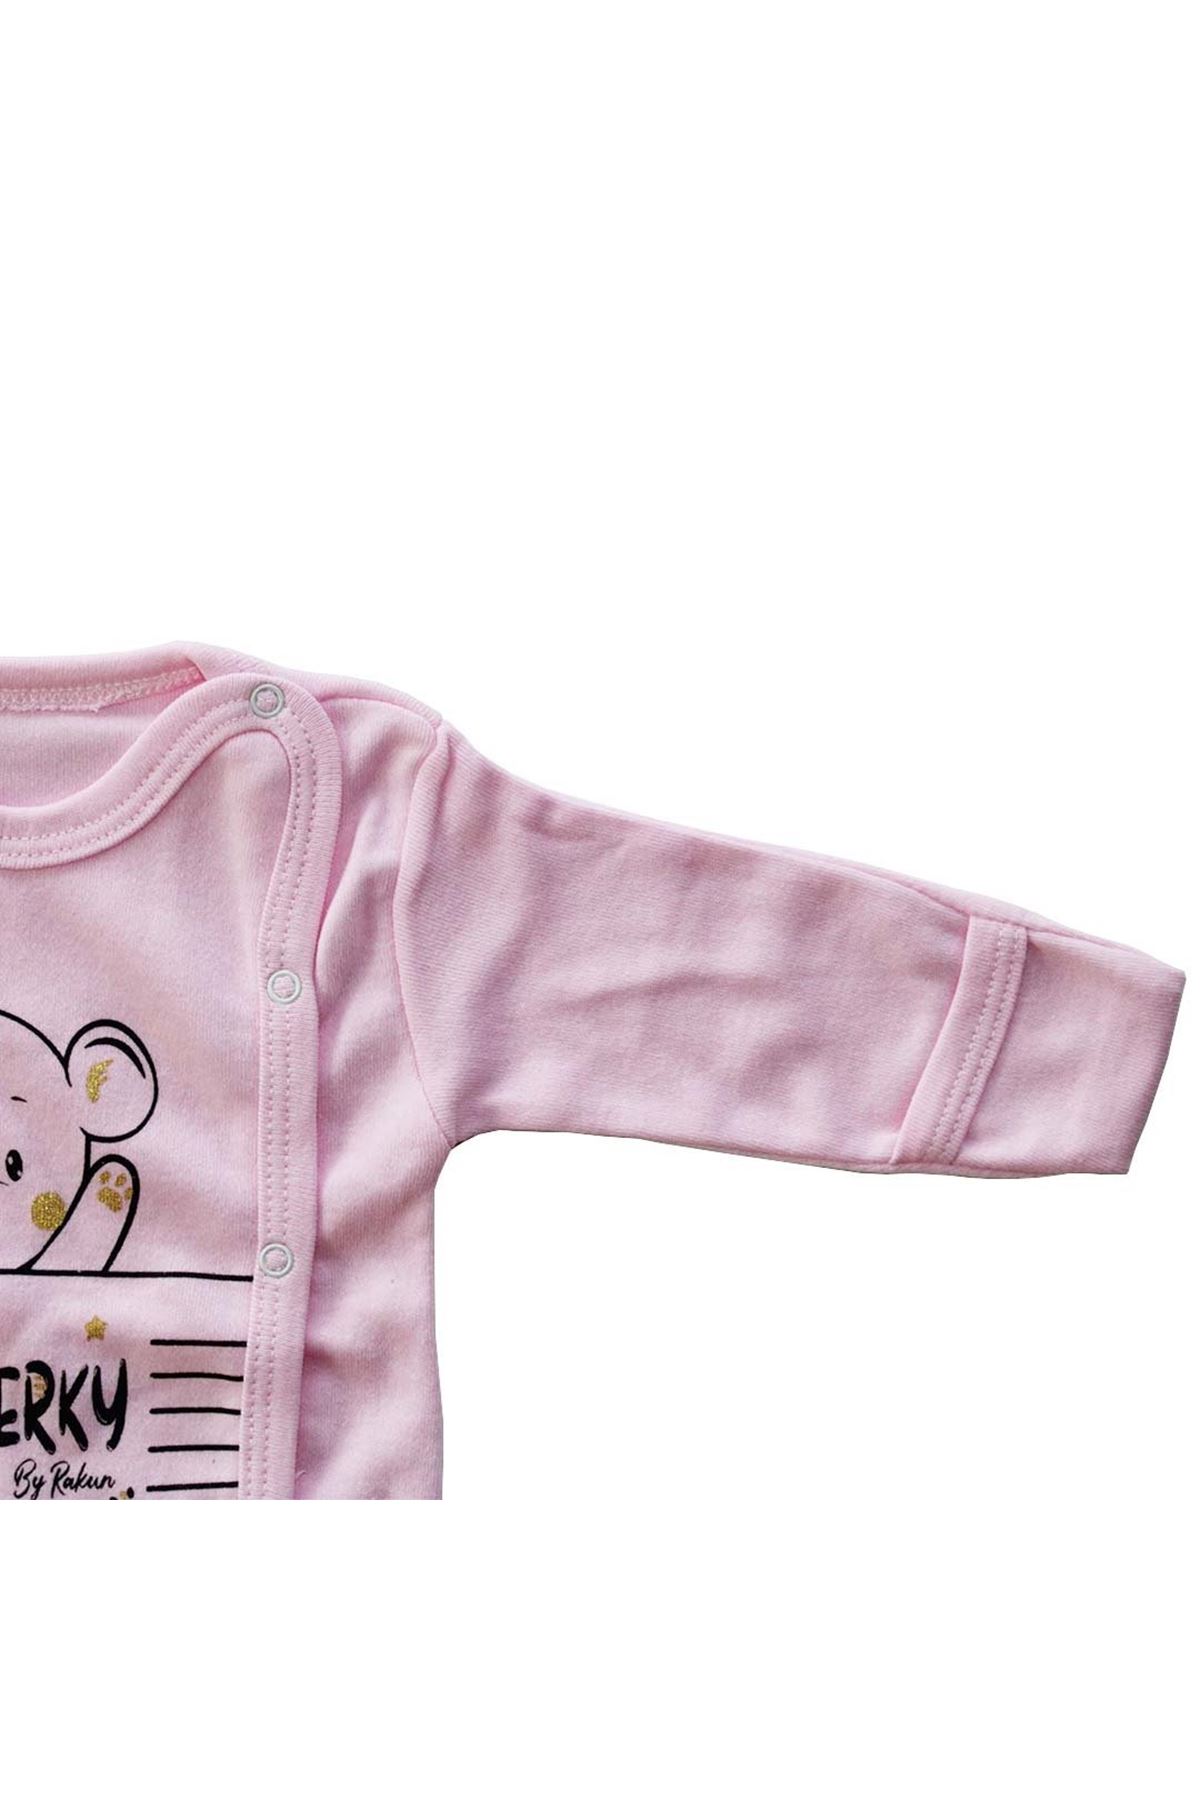 Kız Bebek Pembe Şımarık Ayıcık Kendinden Eldivenli 3'lü Pijama Takımı 0-3 Ay